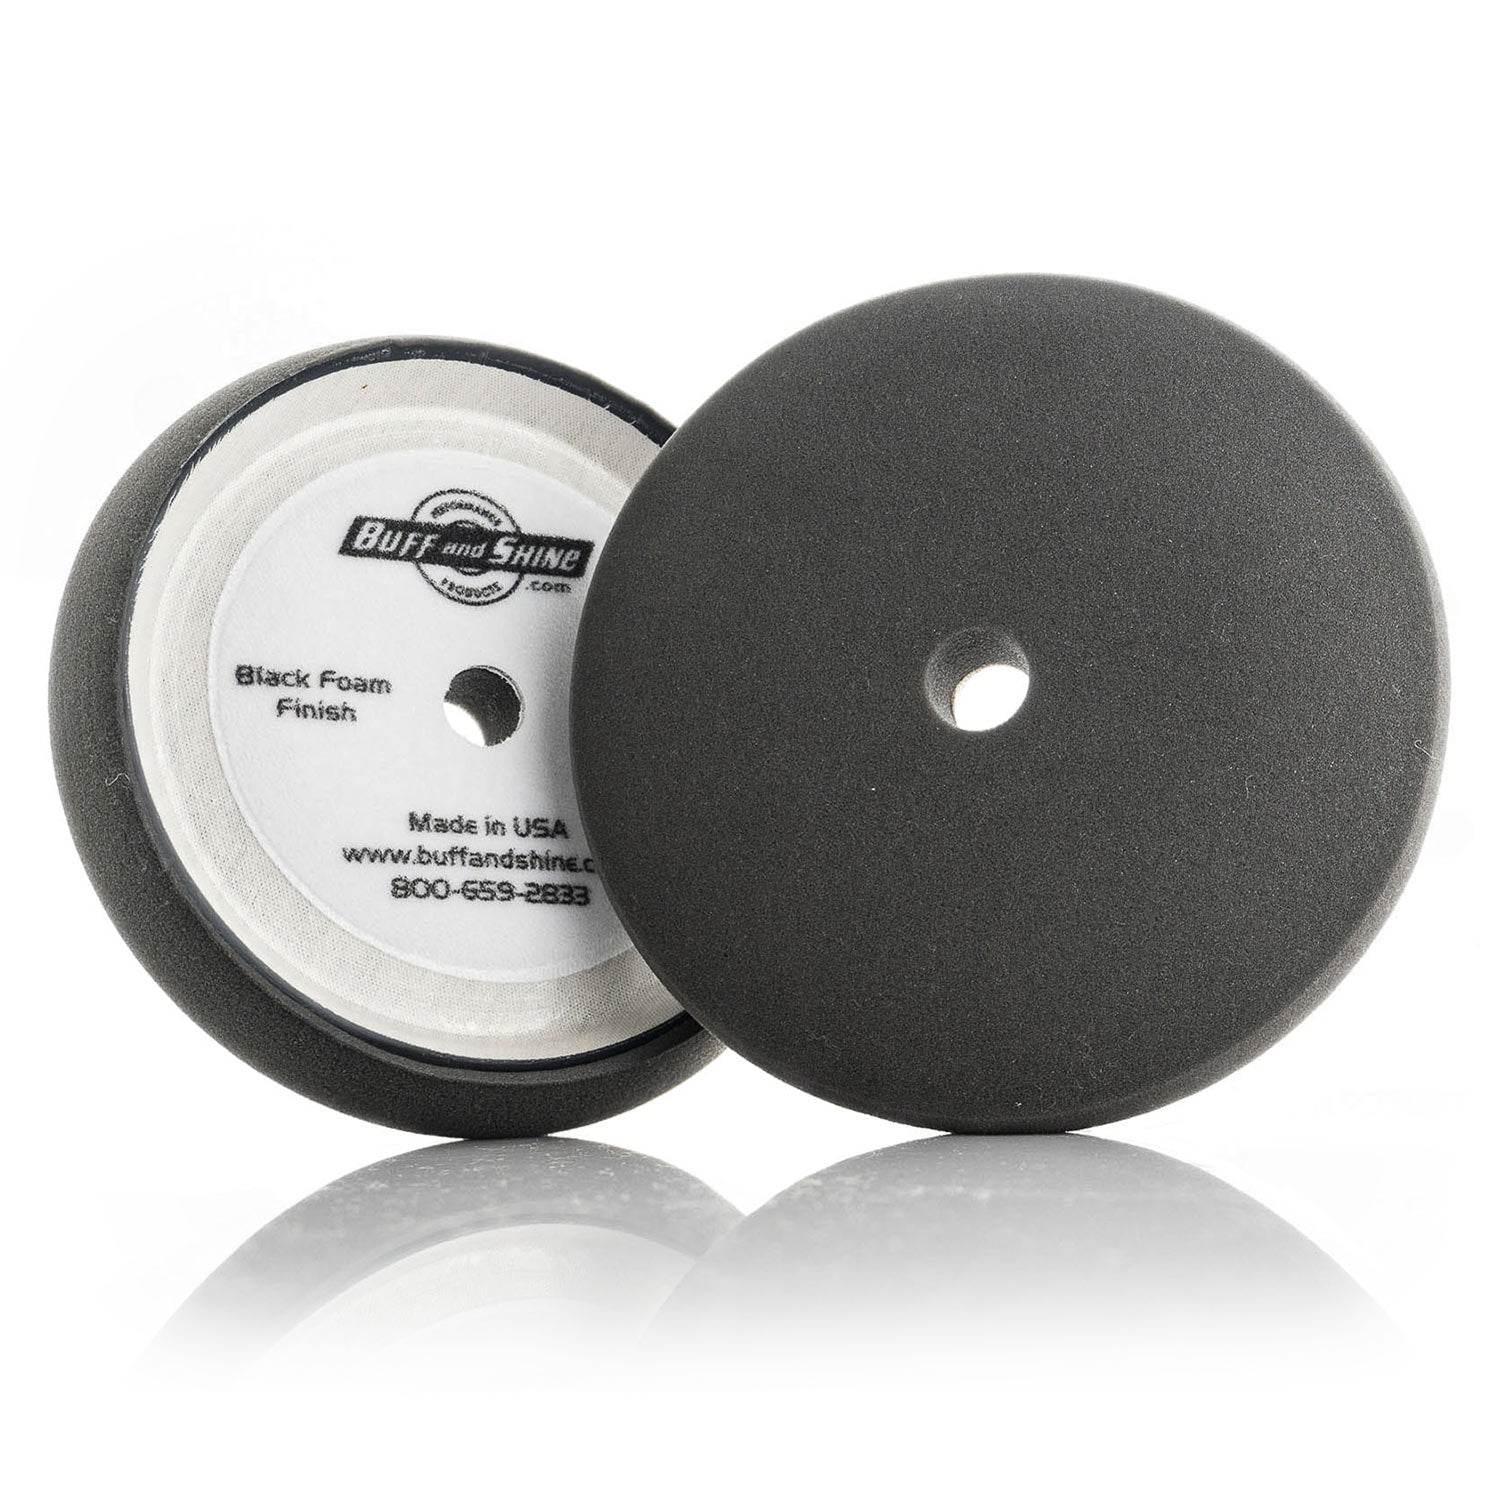 http://snsautosupply.com/cdn/shop/files/p02-polishing-pads-black-foam-dome-8-inch-pads.jpg?v=1683056616